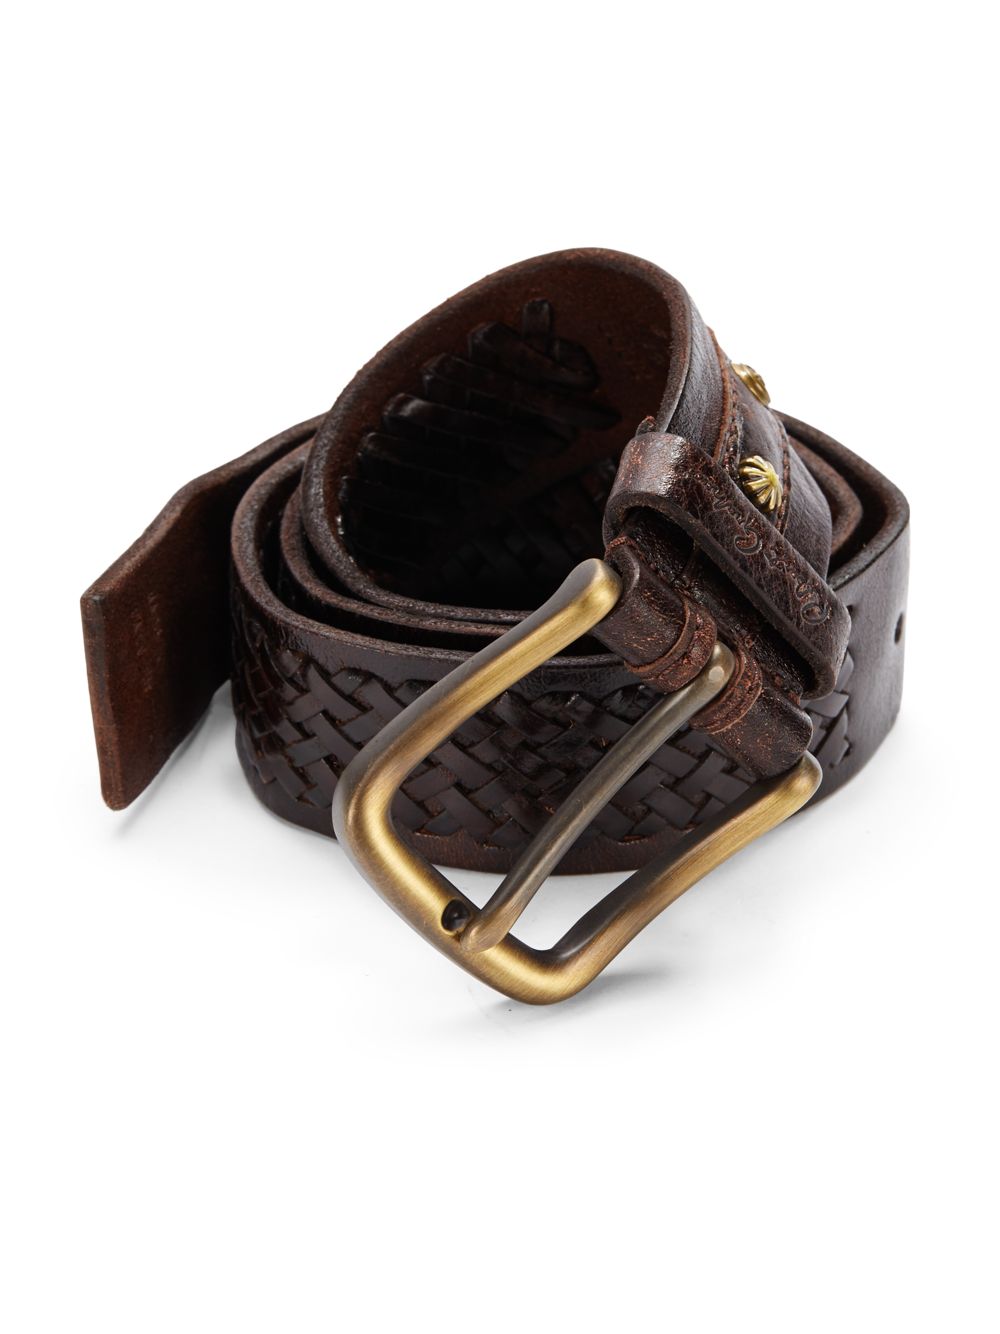 Robert Graham Horton Woven Leather Belt in Brown for Men - Lyst